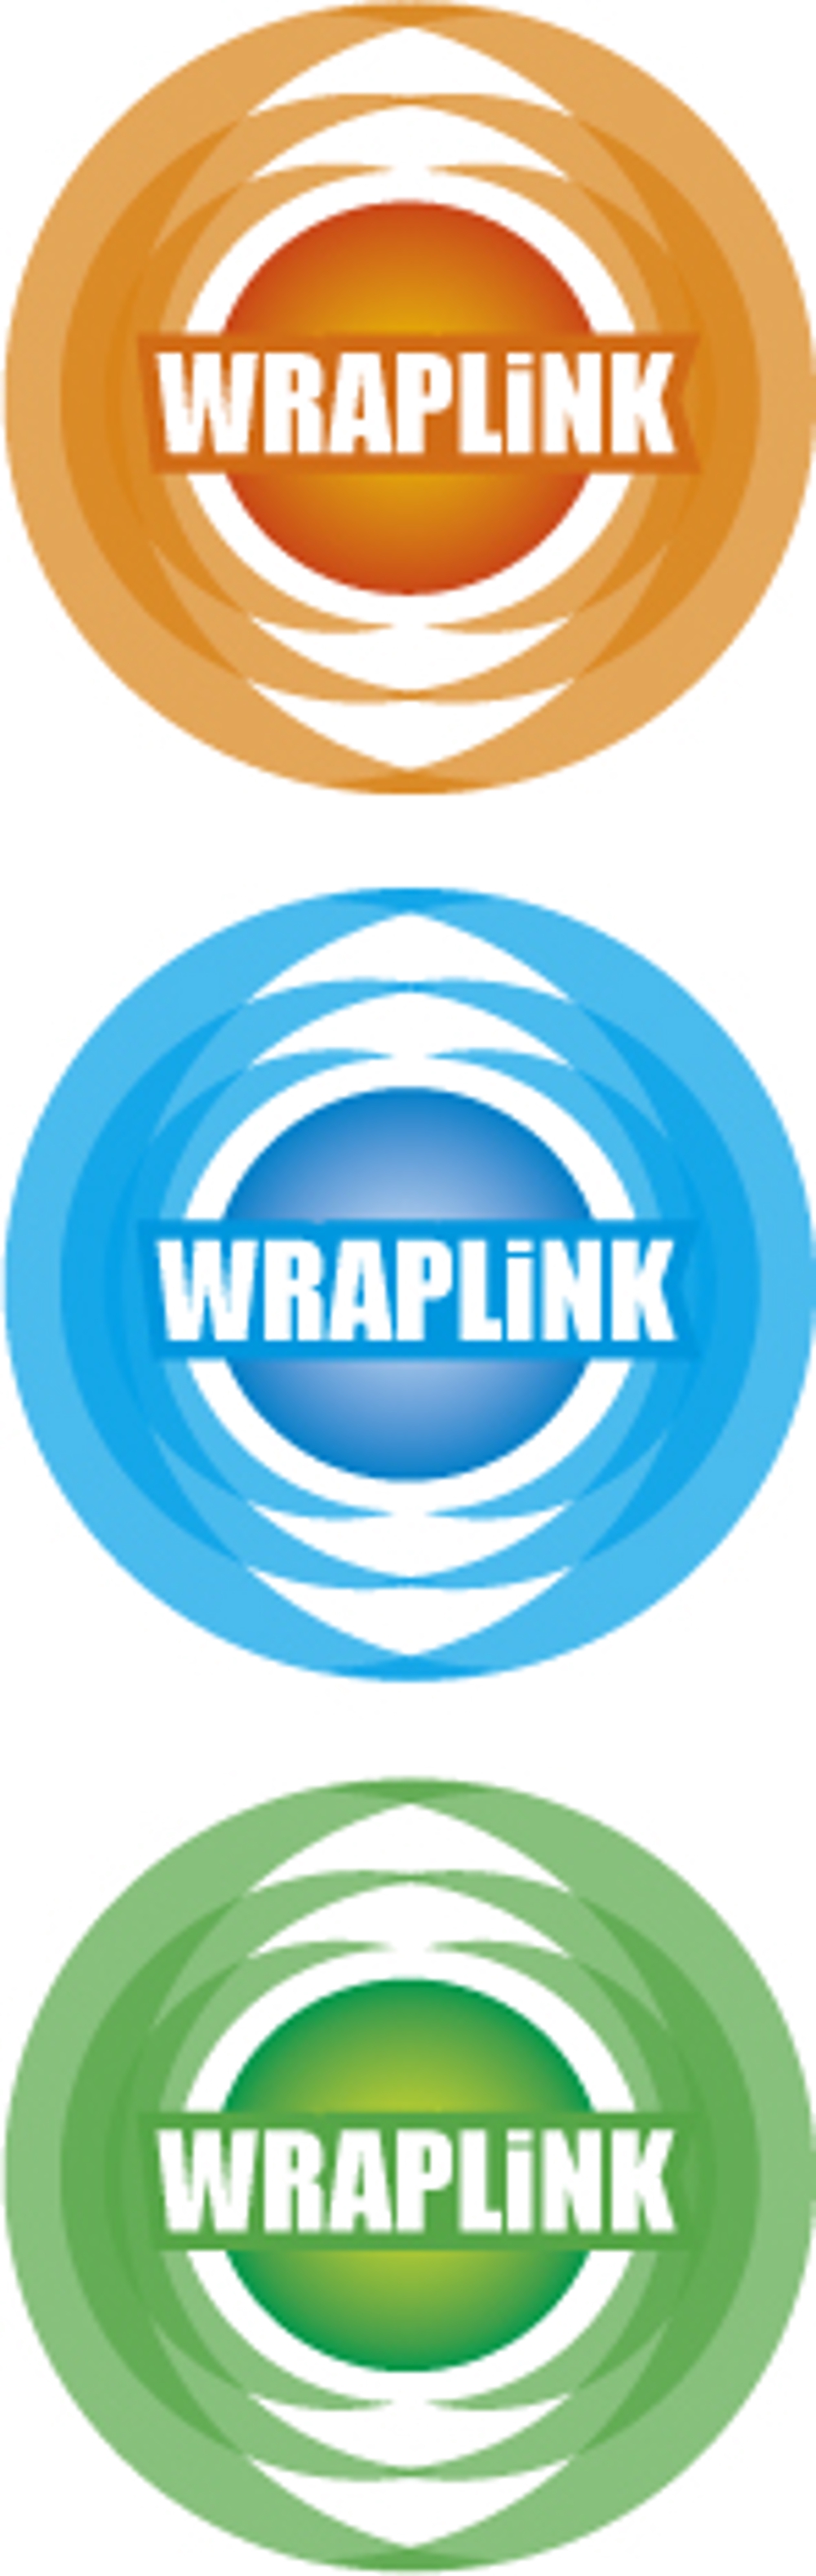 wraplink.jpg